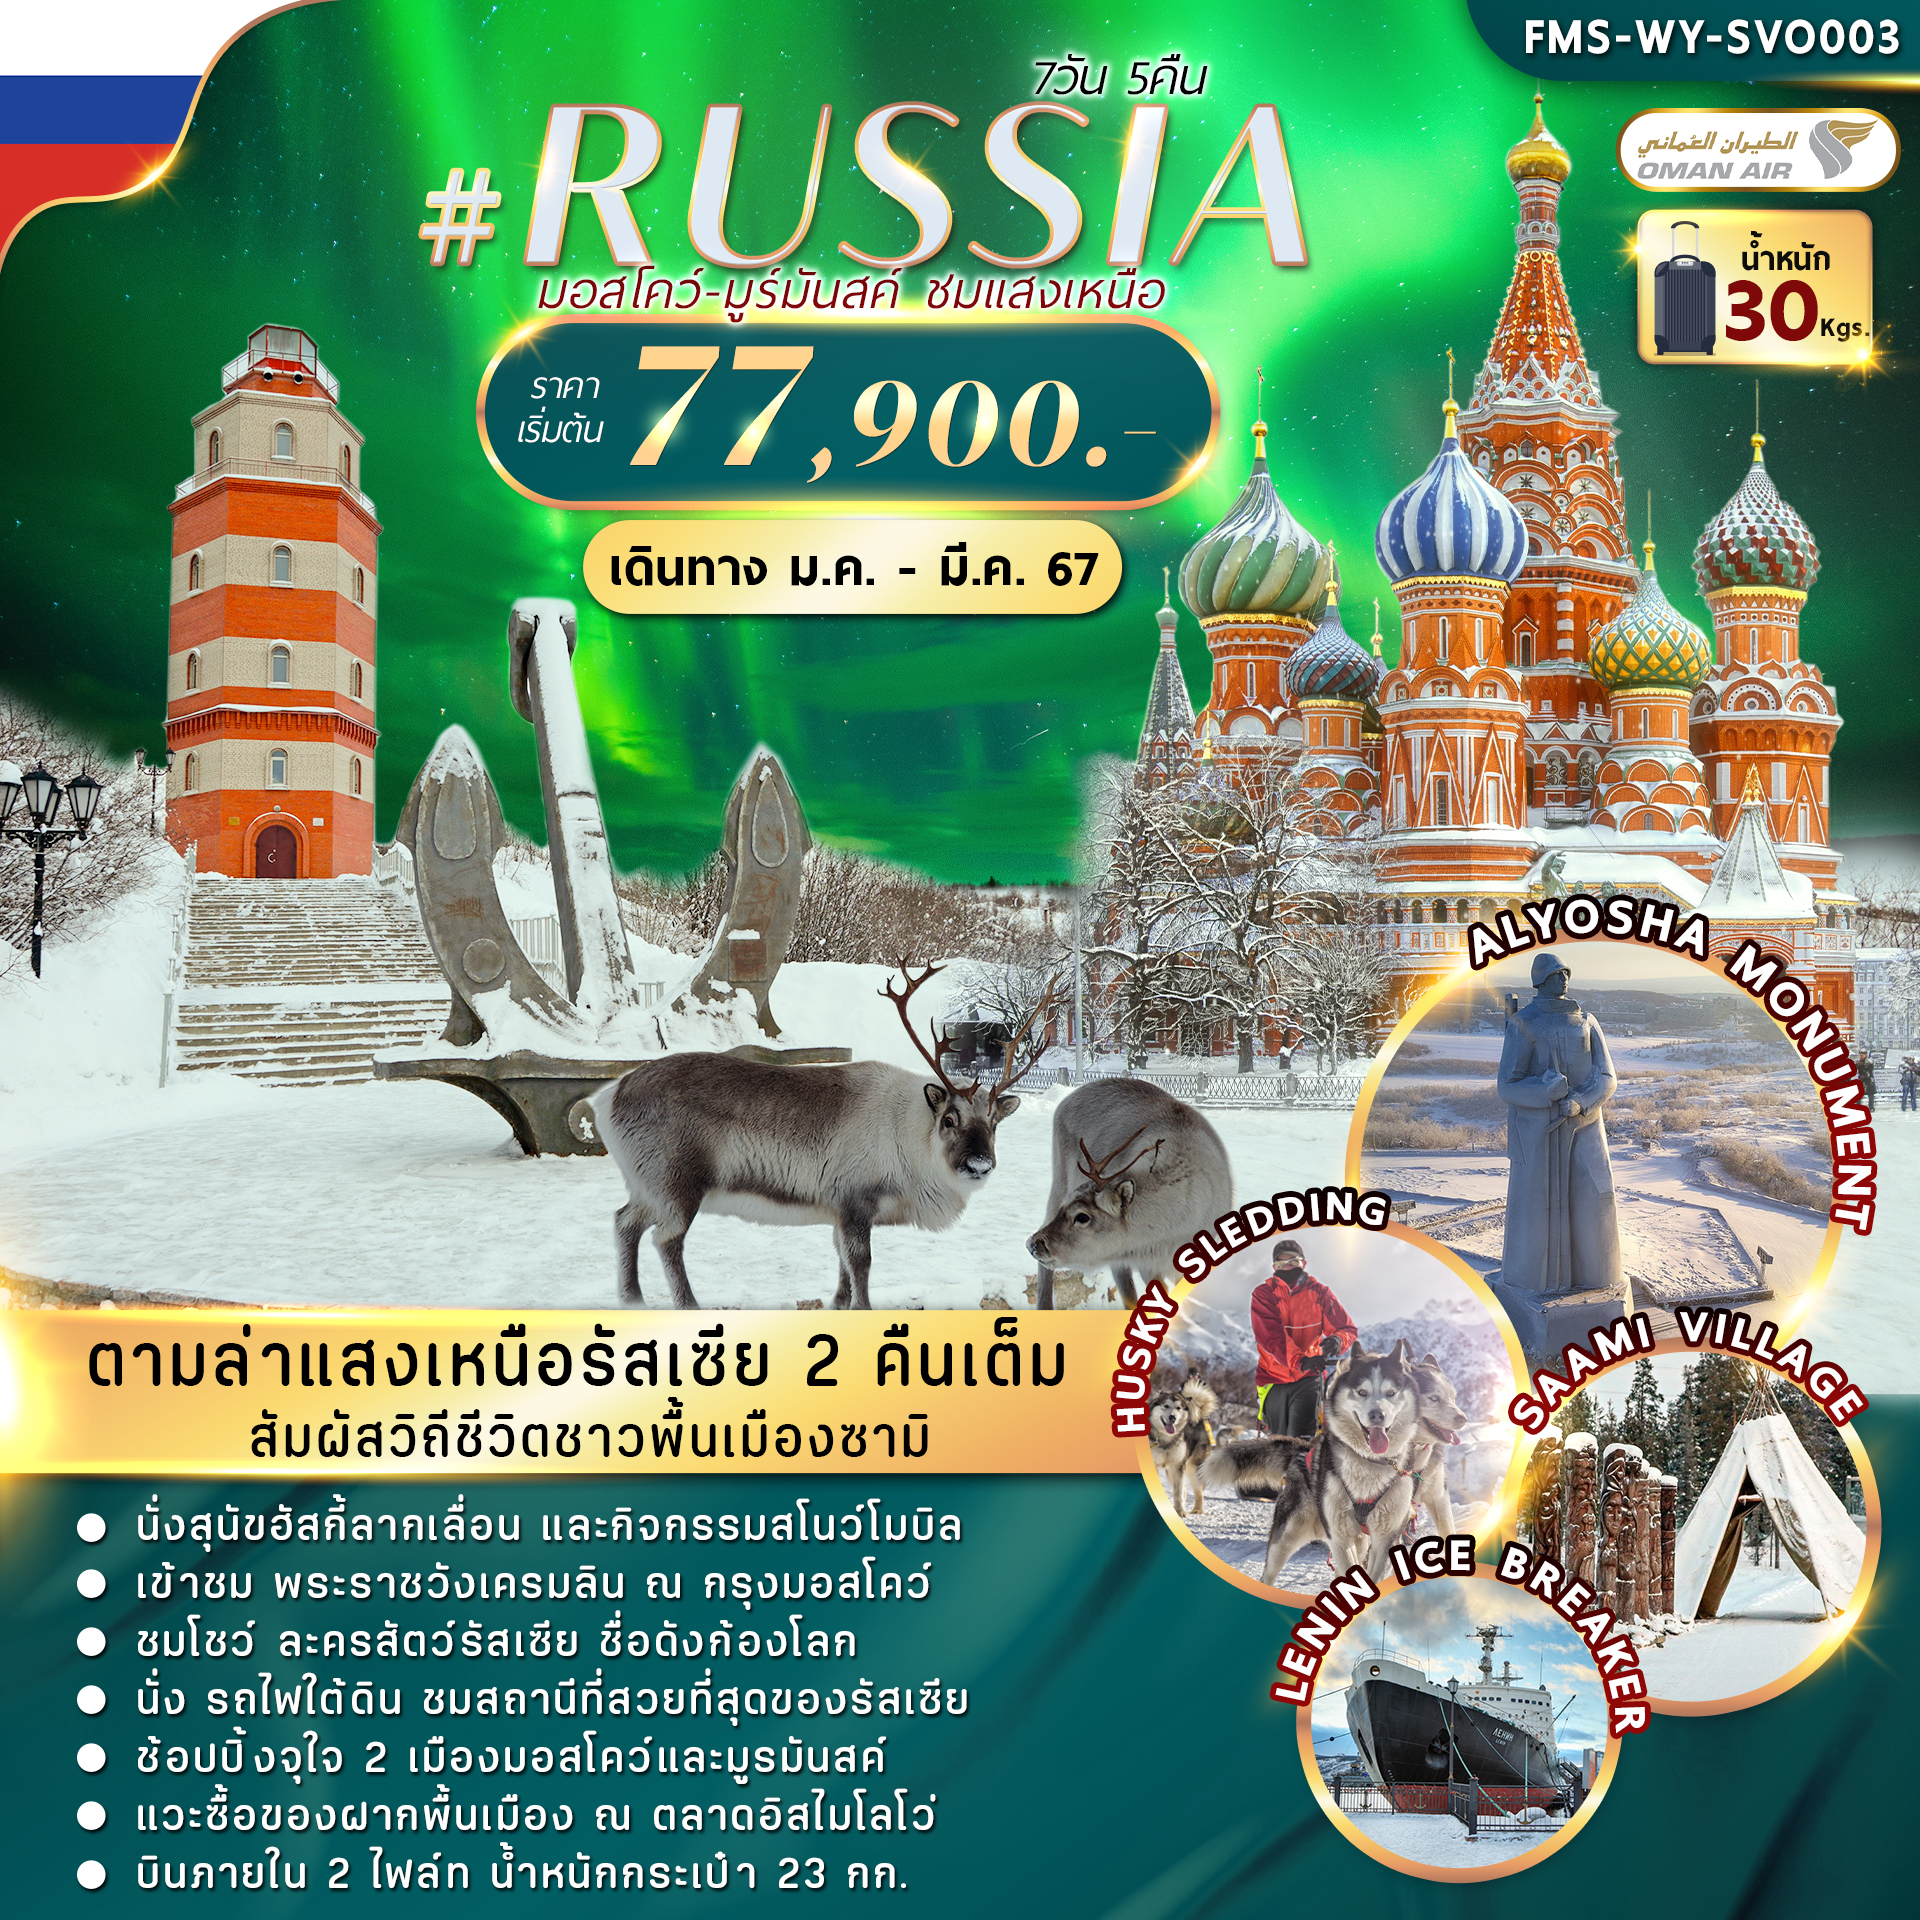 FMS-WY-SVO003 RUSSIA MOW-MURMANSK AURORA 7D5N (WY)